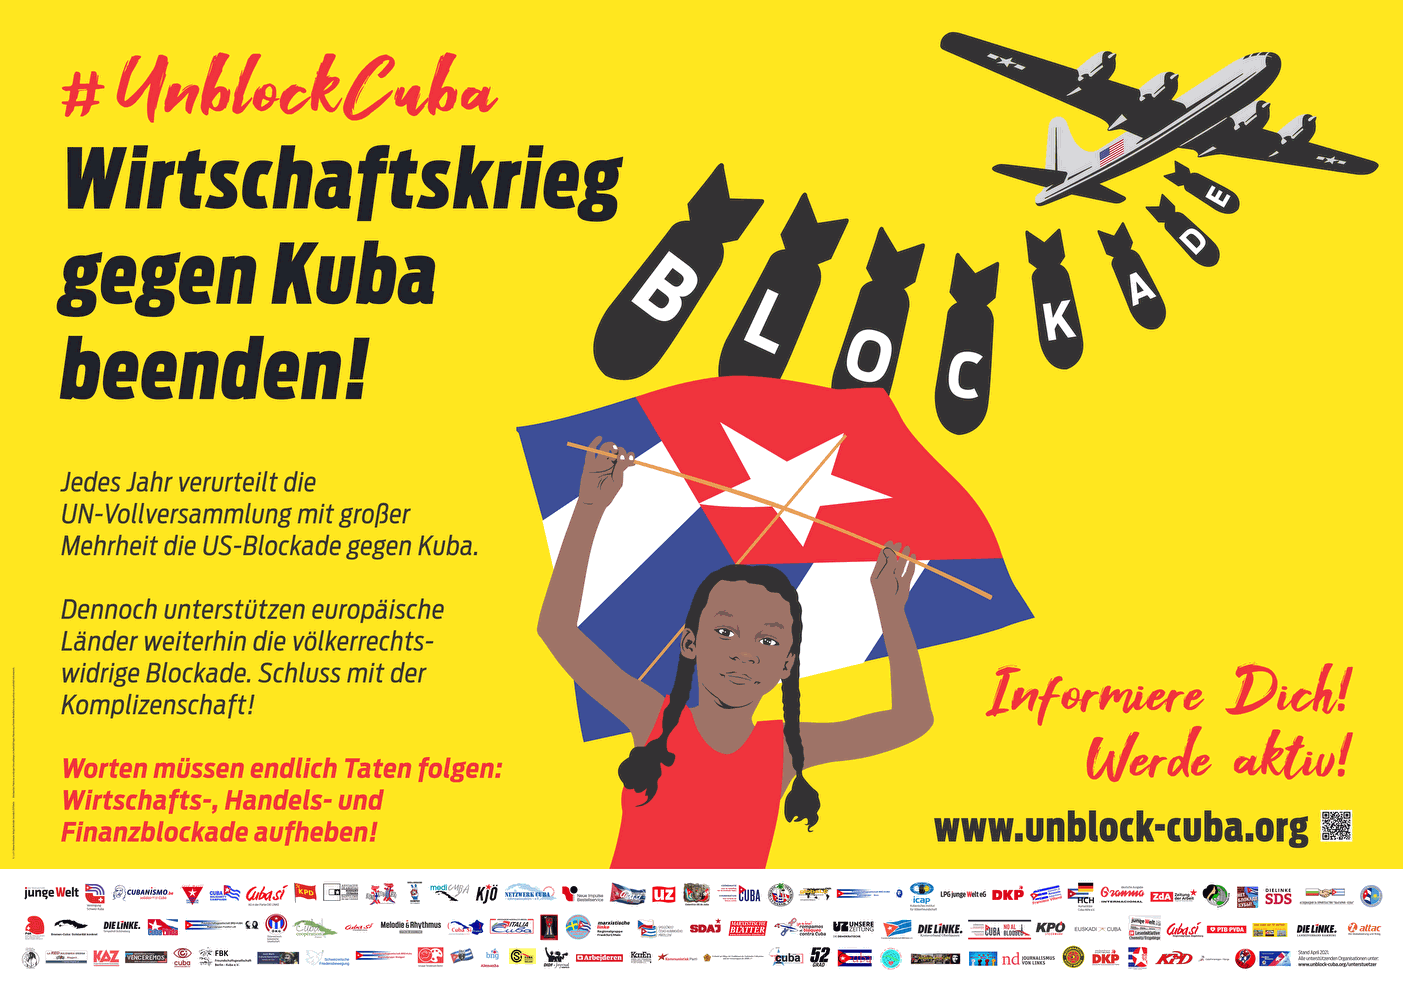 Unblock Cuba Grossflaeche - Europäische Solidaritätsaktion "Unblock Cuba" startet am Samstag - Kuba, Kuba-Solidarität - Blog, Neues aus den Bewegungen